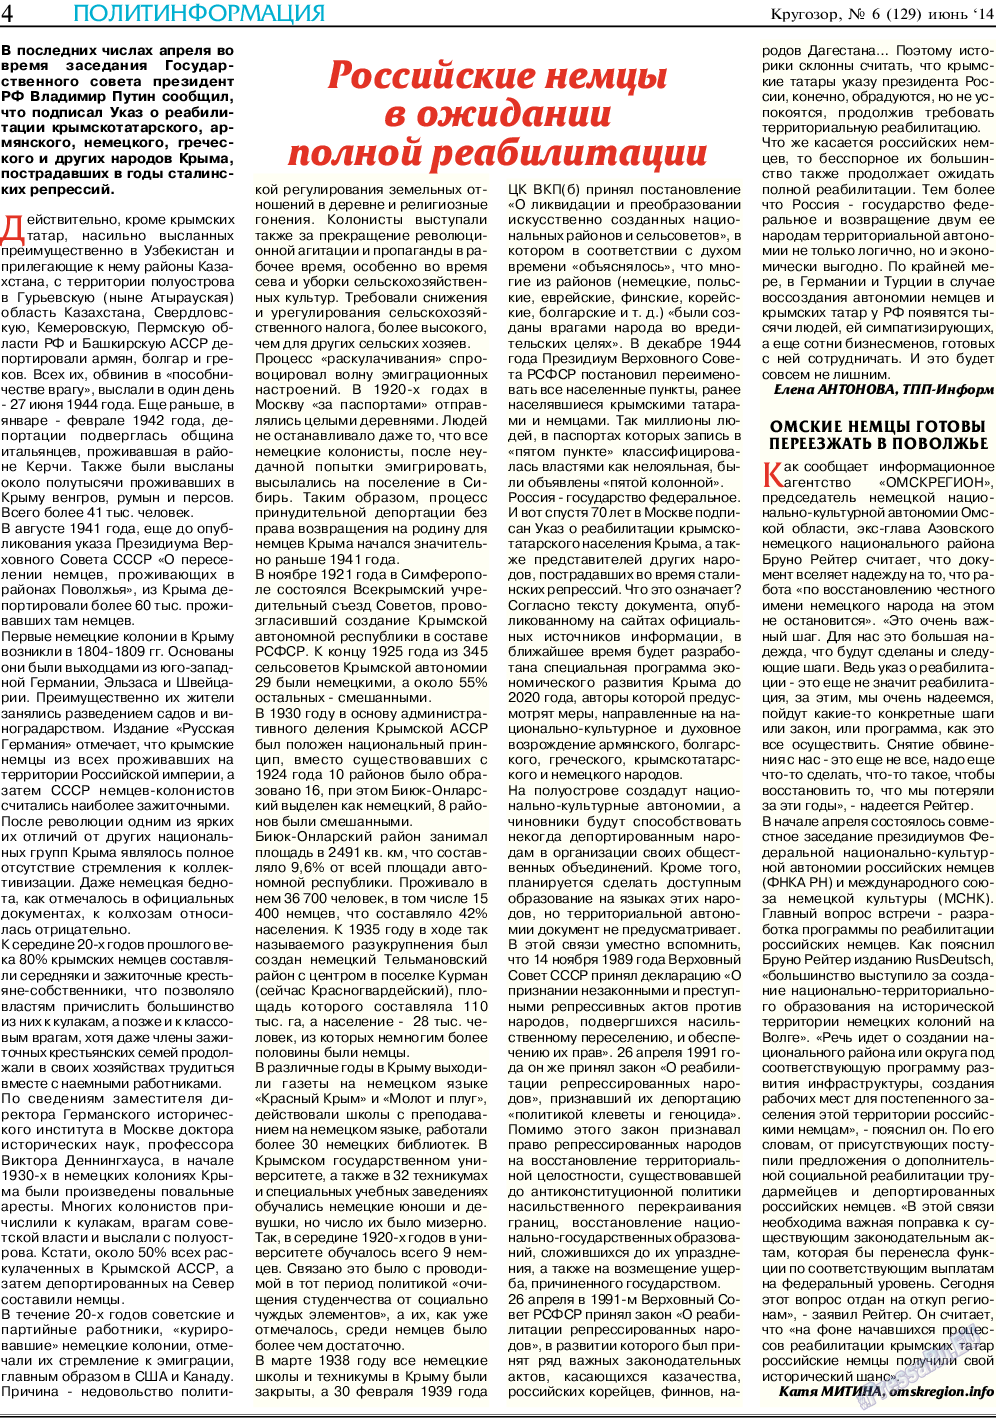 Кругозор (газета). 2014 год, номер 6, стр. 4